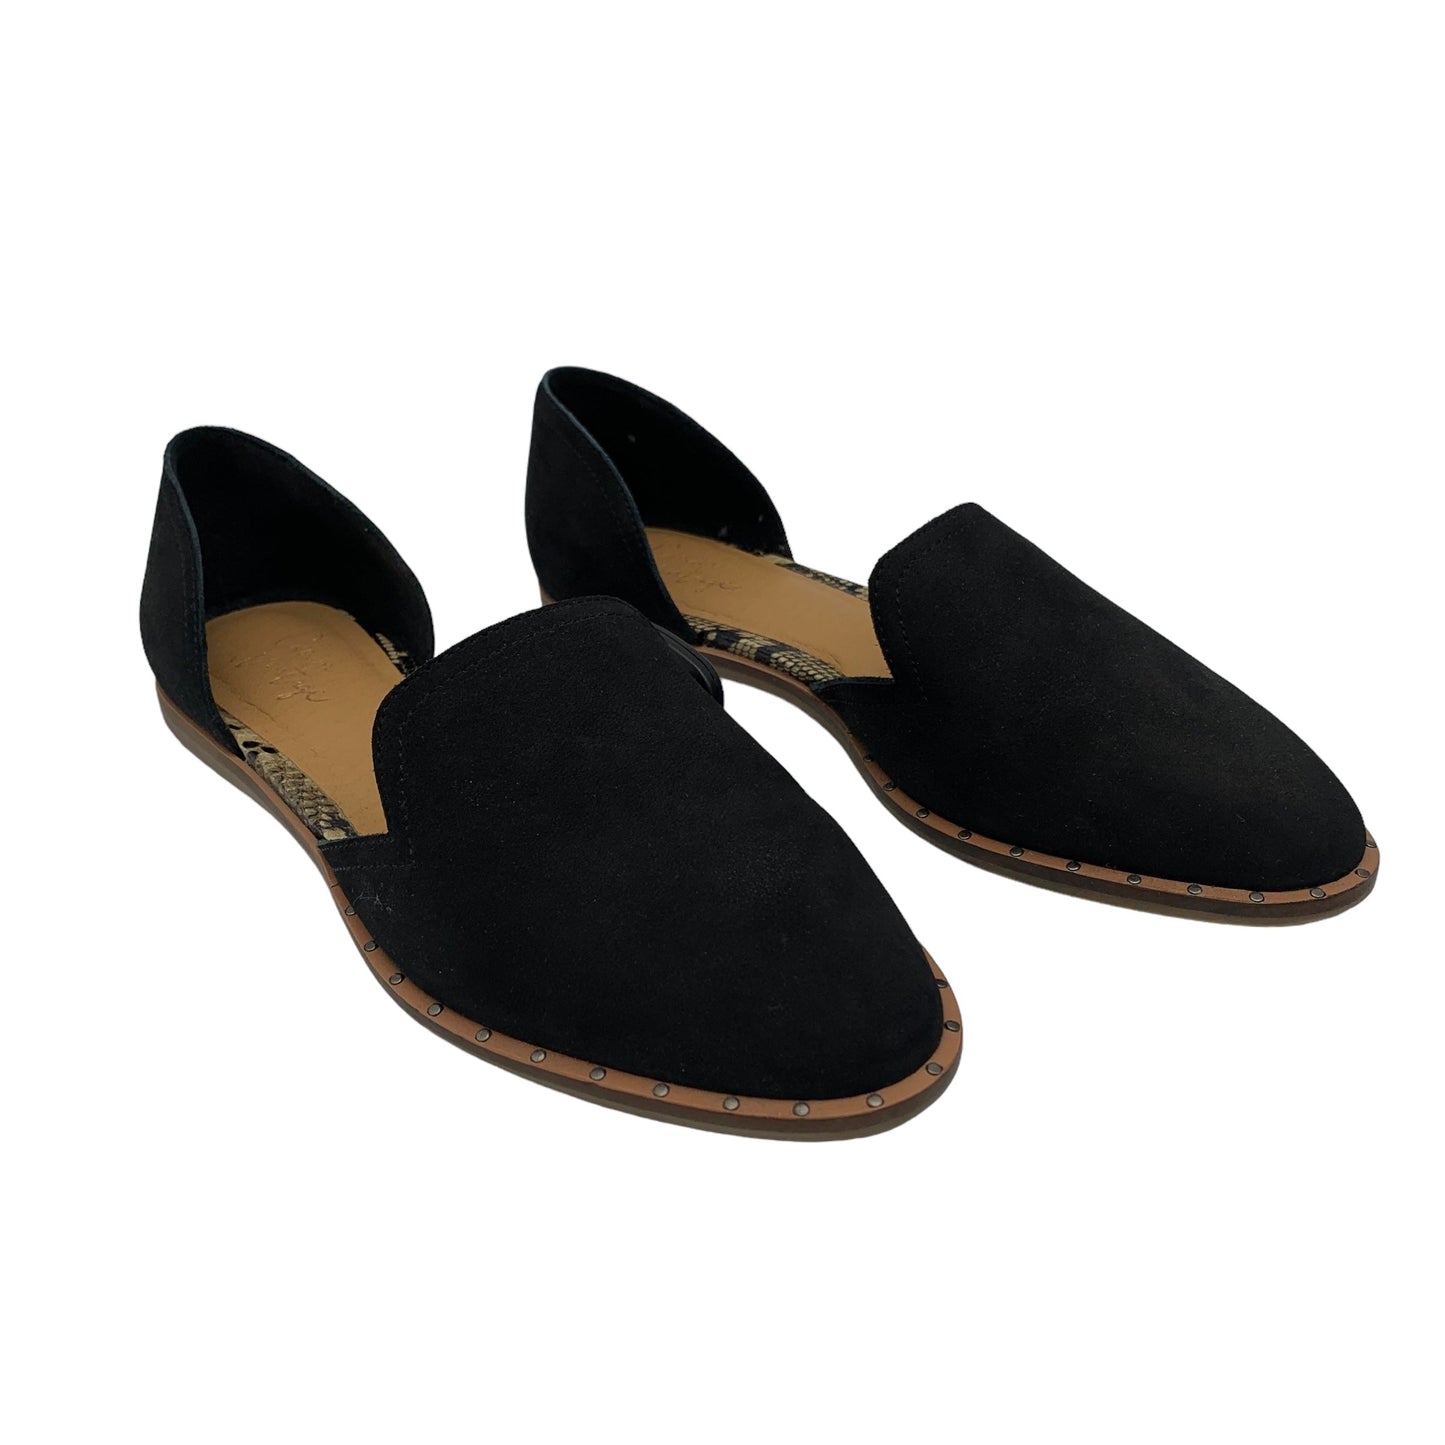 Black Shoes Flats Crown Vintage, Size 6.5